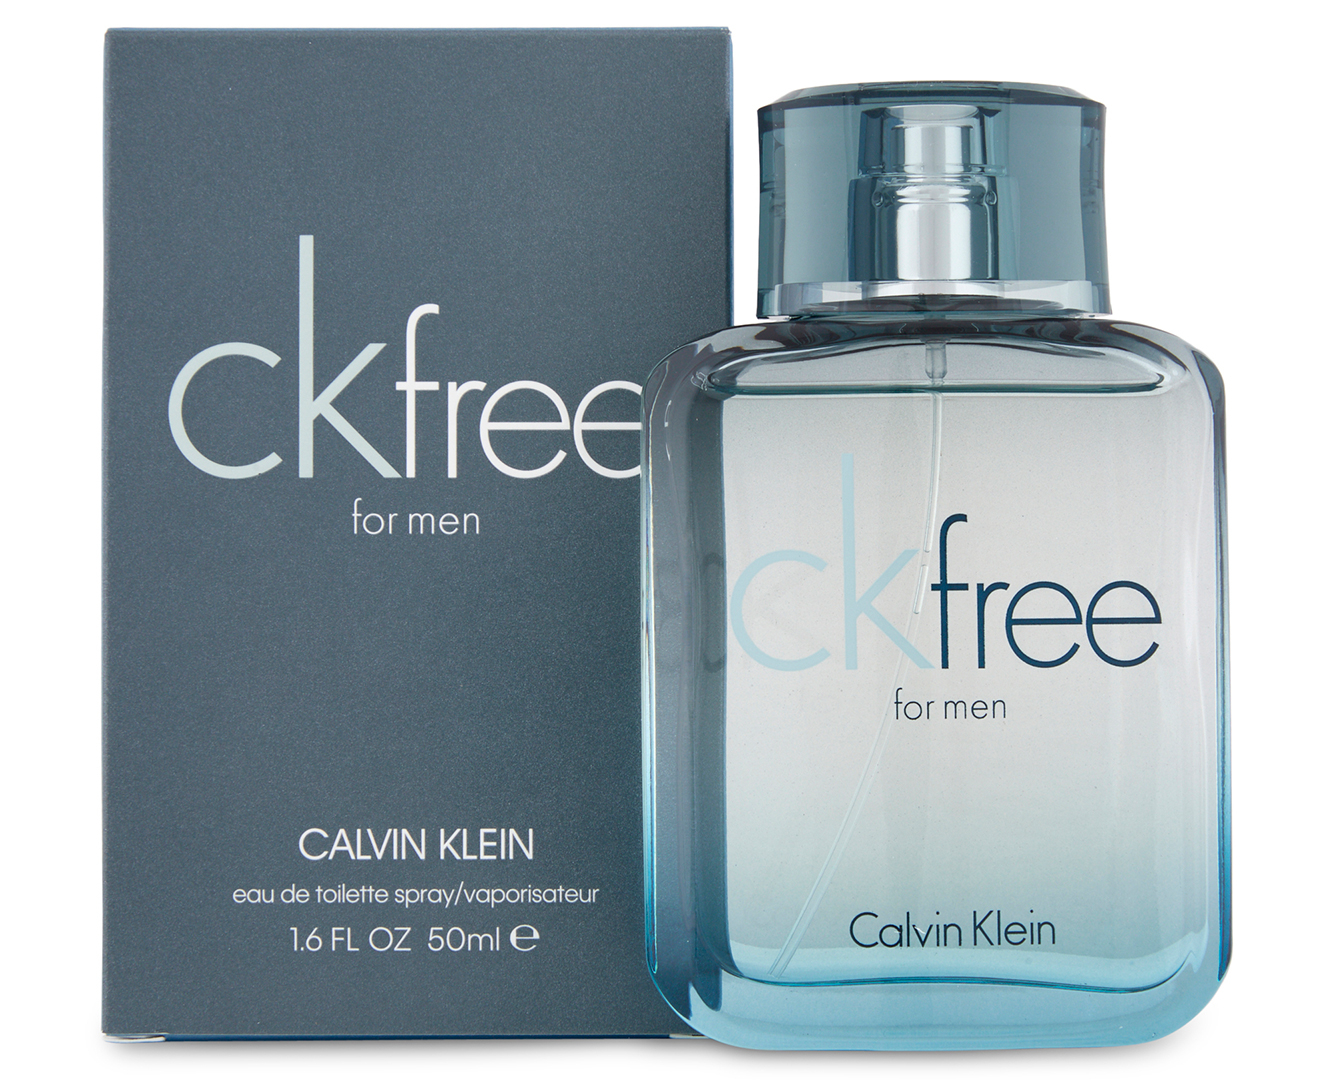 Geheim heb vertrouwen Spotlijster Calvin Klein CK Free For Men EDT Perfume 50mL | Catch.com.au